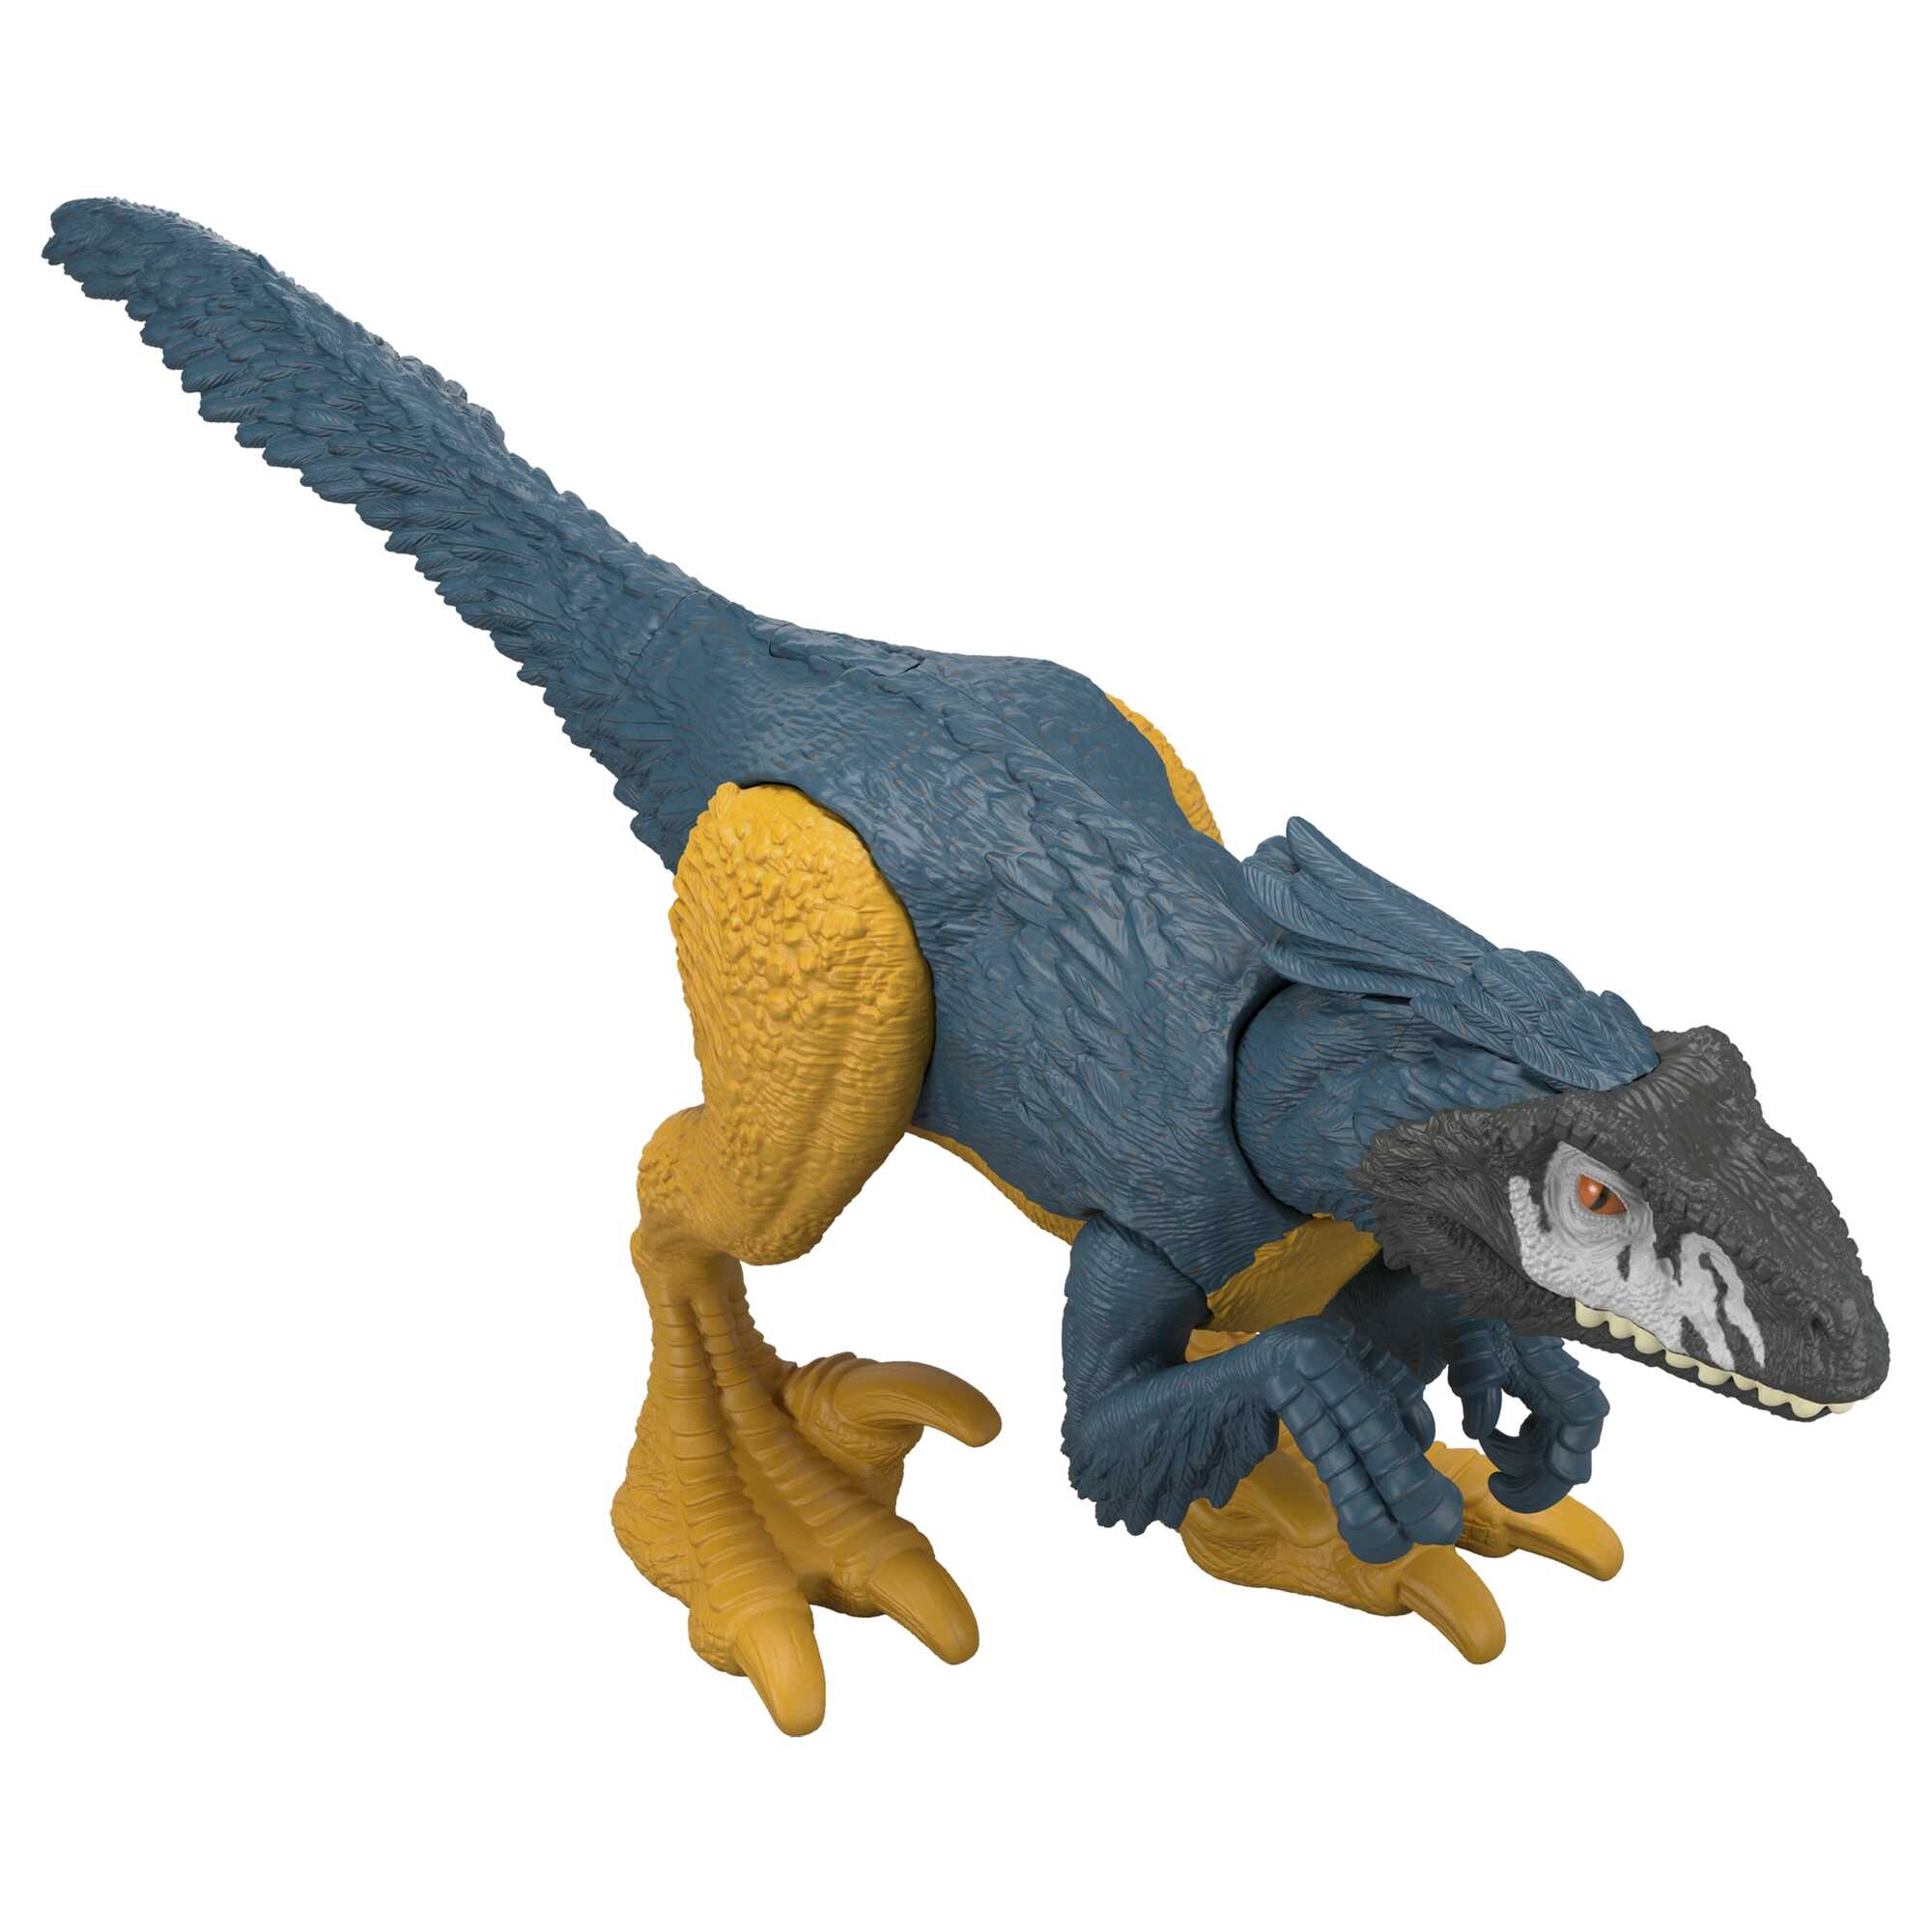 Jurassic world pericolo giurassico - pyroraptor, dinosauro snodato con design autentico, specie di medie dimensioni lungo 18 cm e alto 7+ cm - Jurassic World